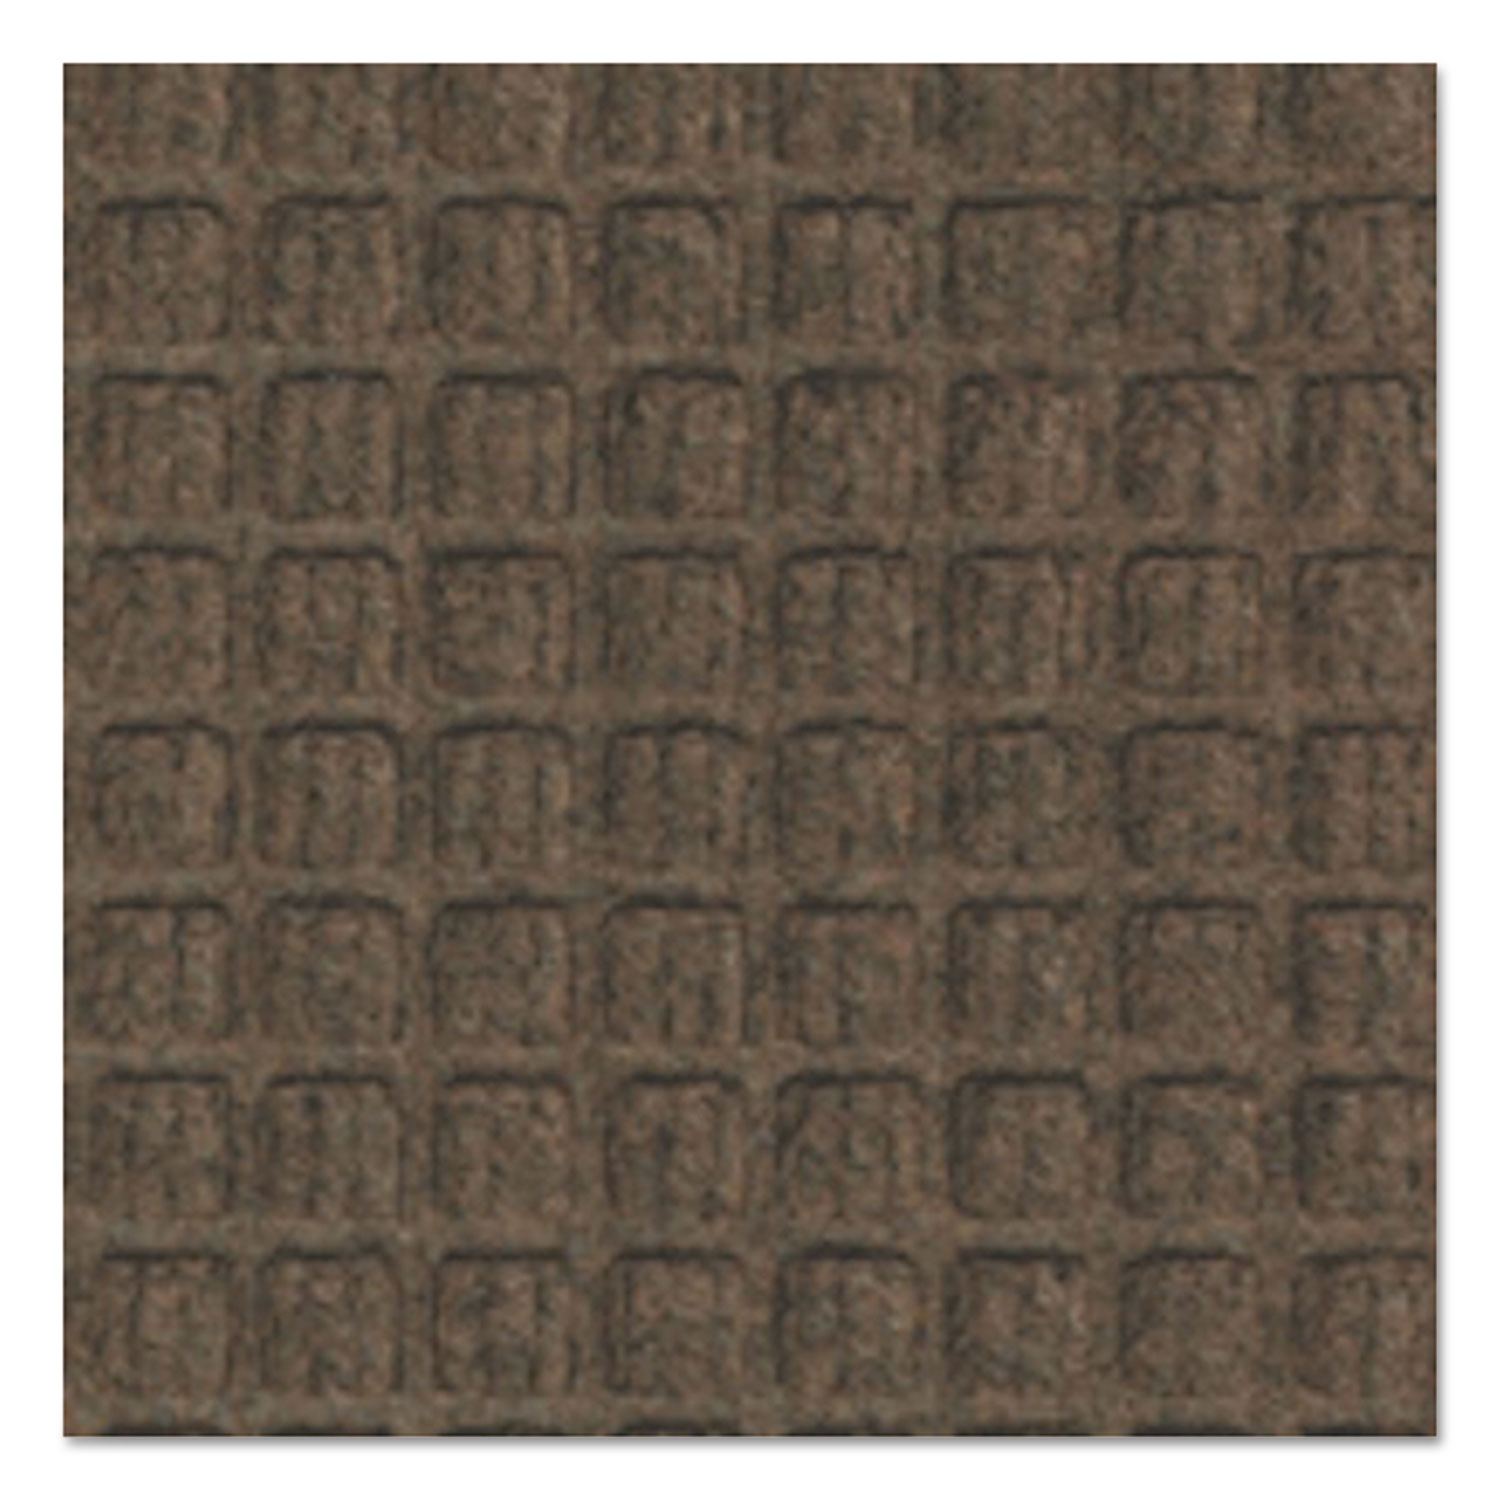 Super-Soaker Wiper Mat w/Gripper Bottom, Polypropylene, 34 x 58, Dark Brown